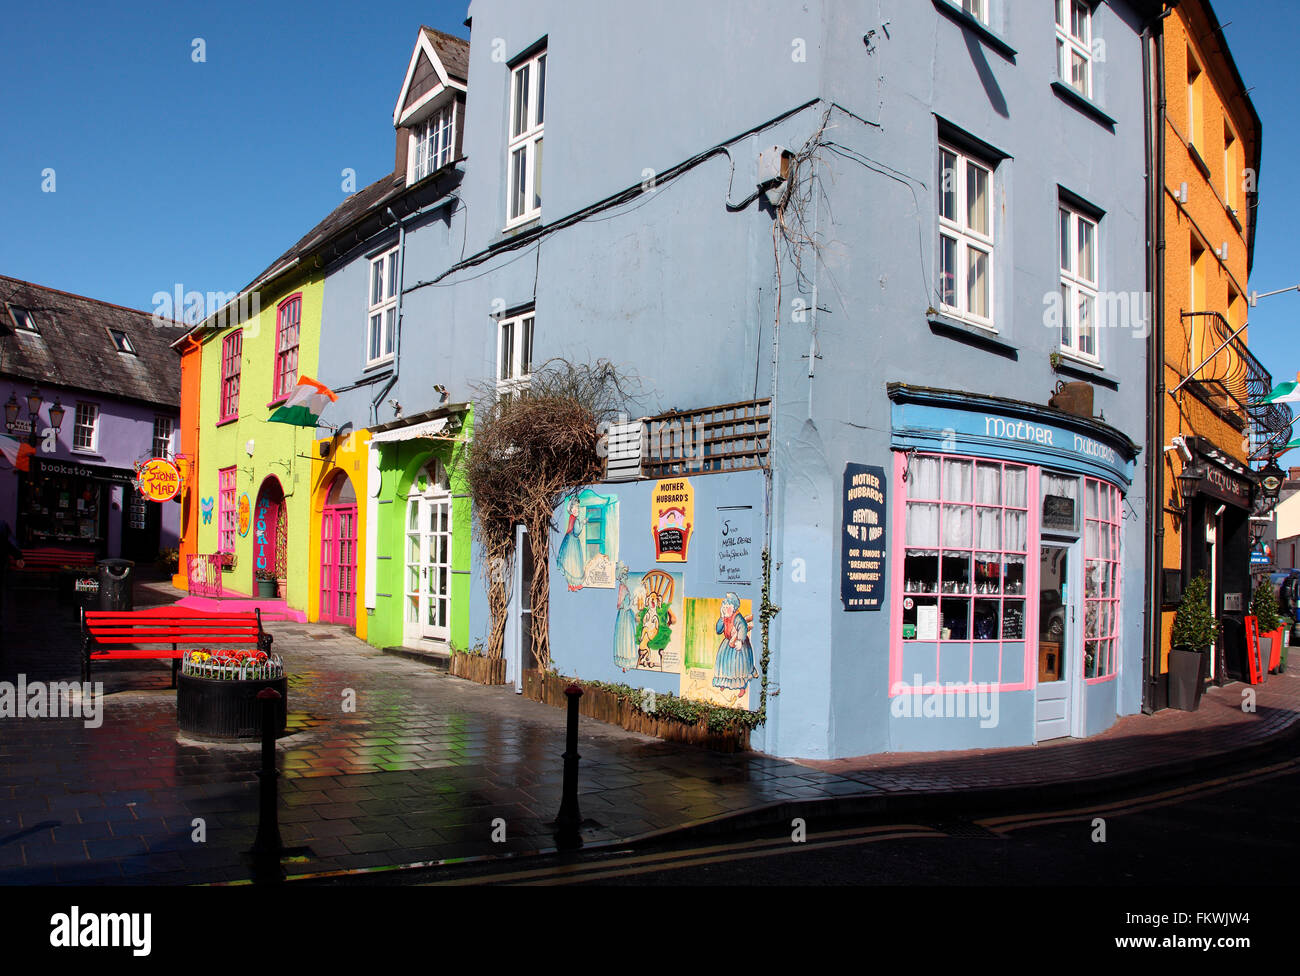 Street scene in Kinsale's historic quarter Stock Photo